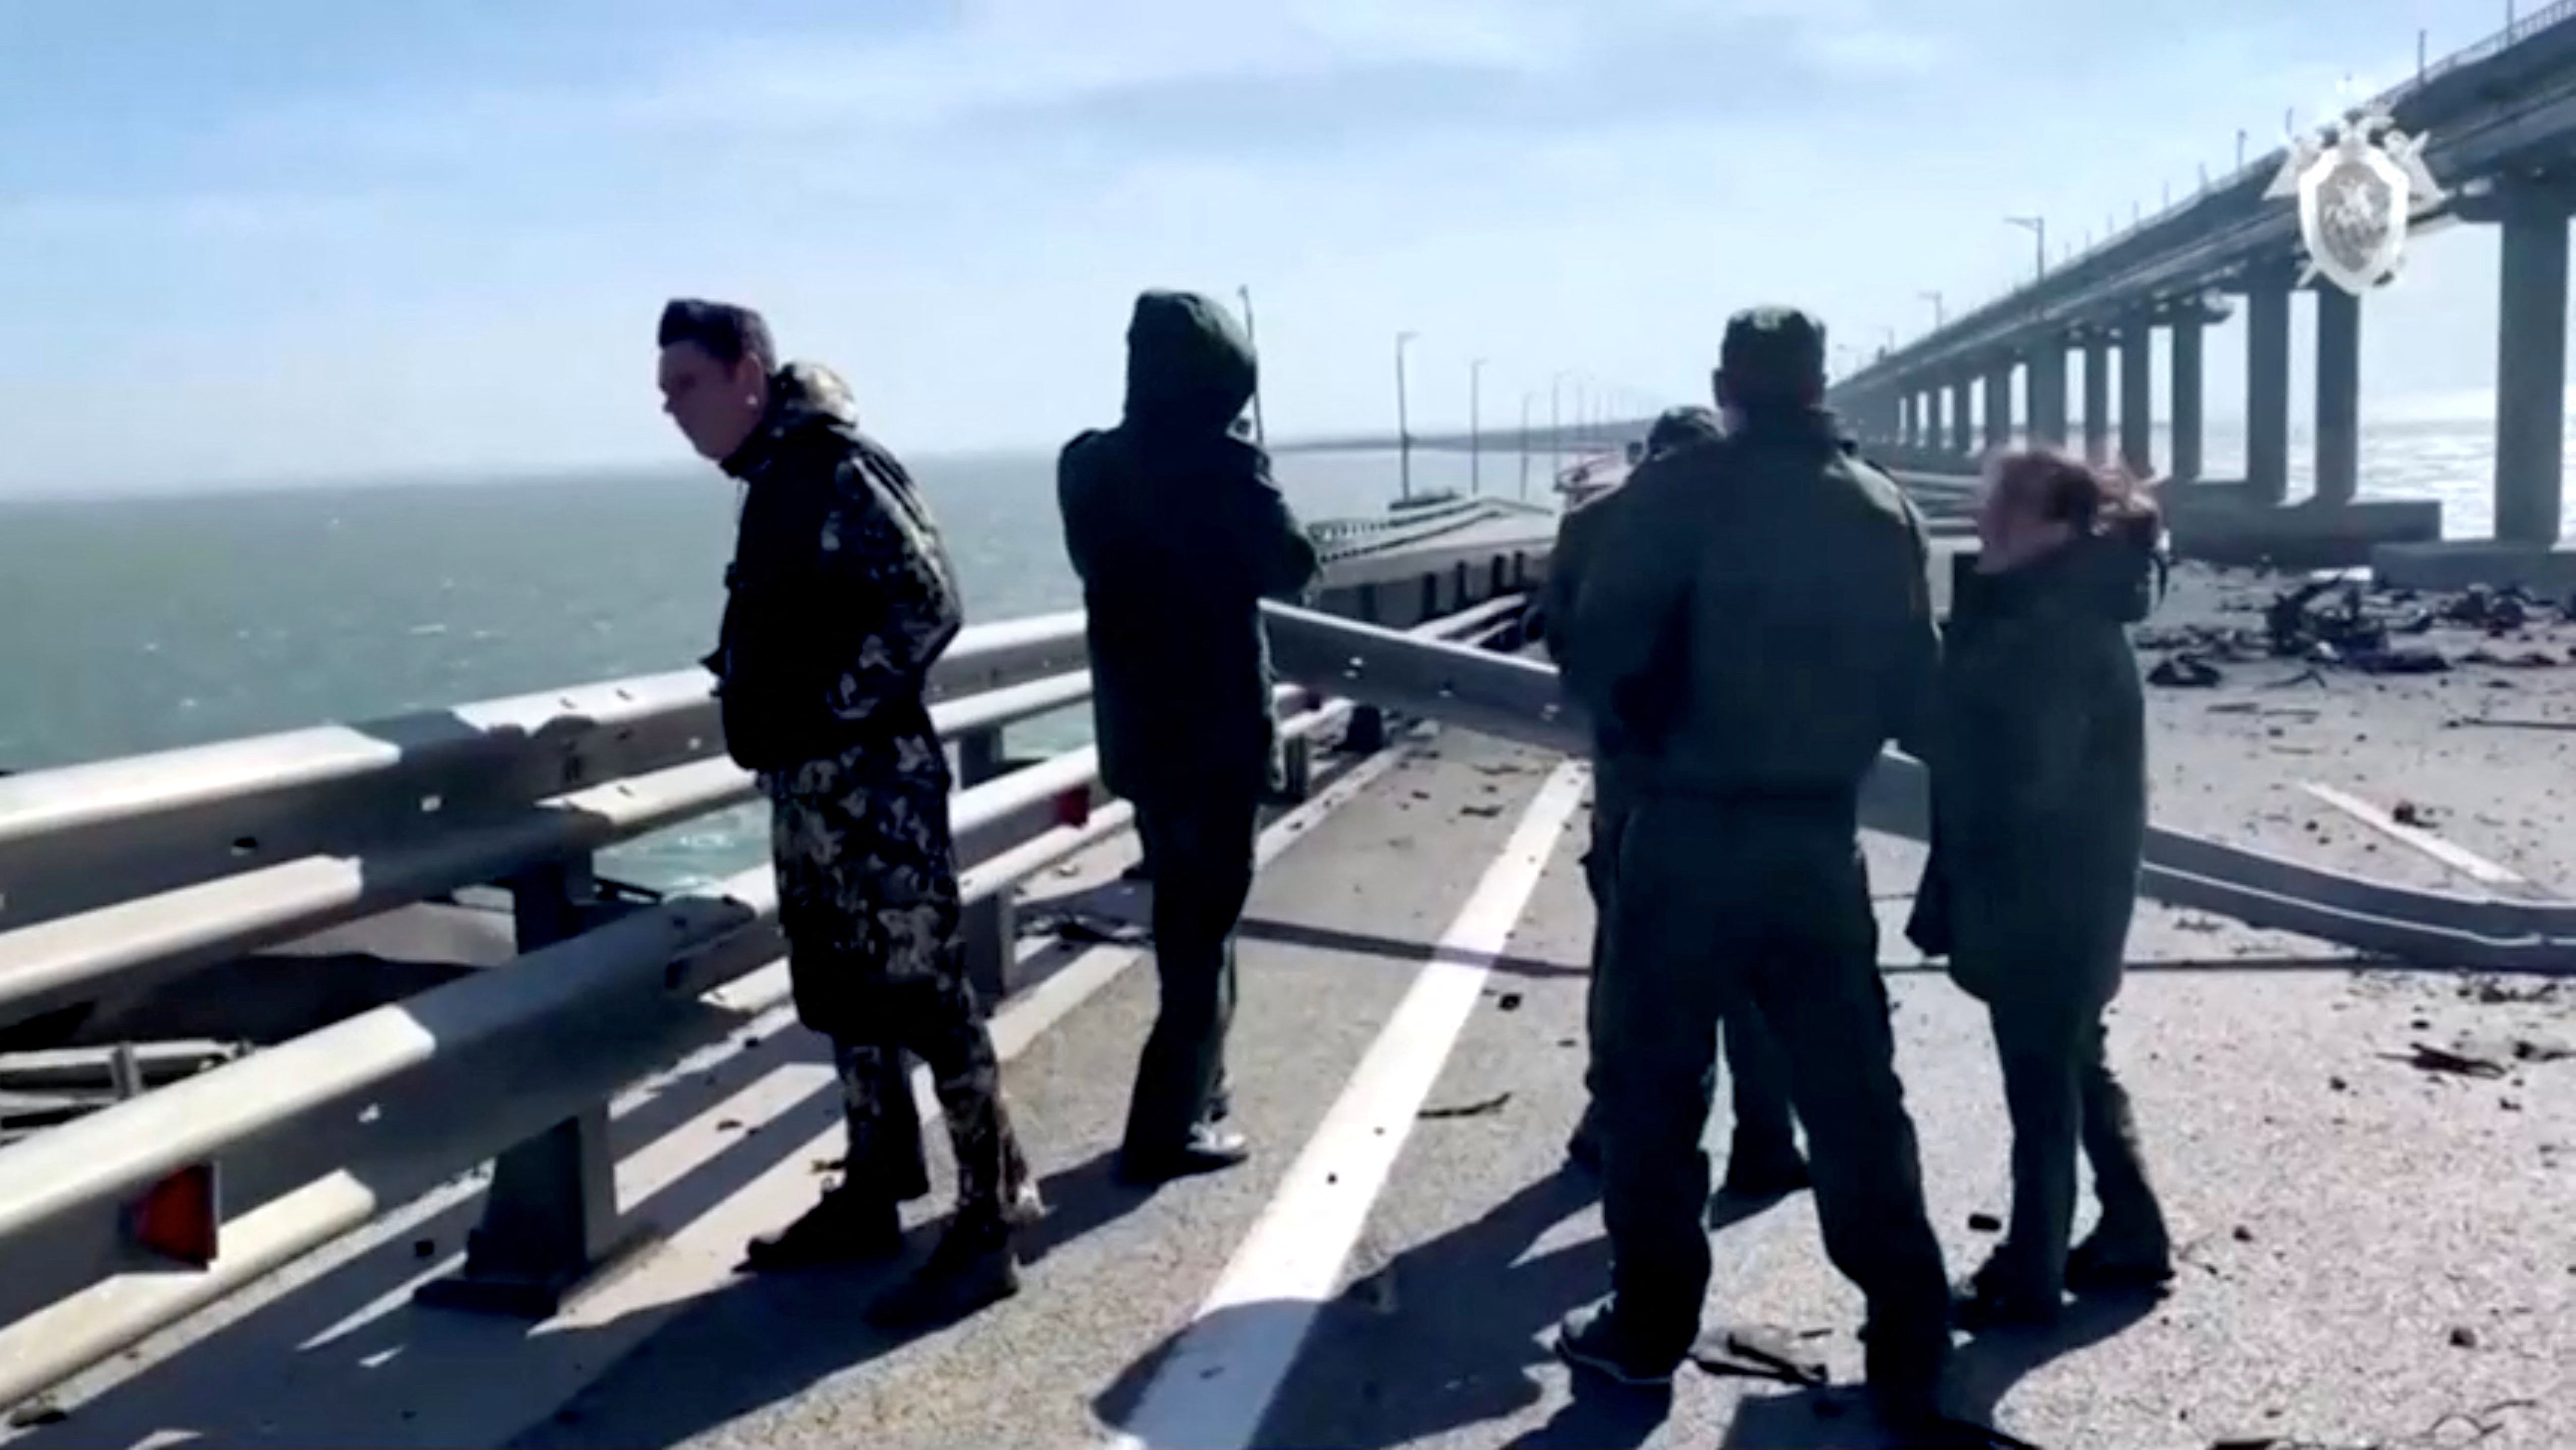 La ironía de Zelensky sobre la explosión en el puente de Kerch: “Hoy fue un buen día, desafortunadamente estuvo nublado en Crimea”